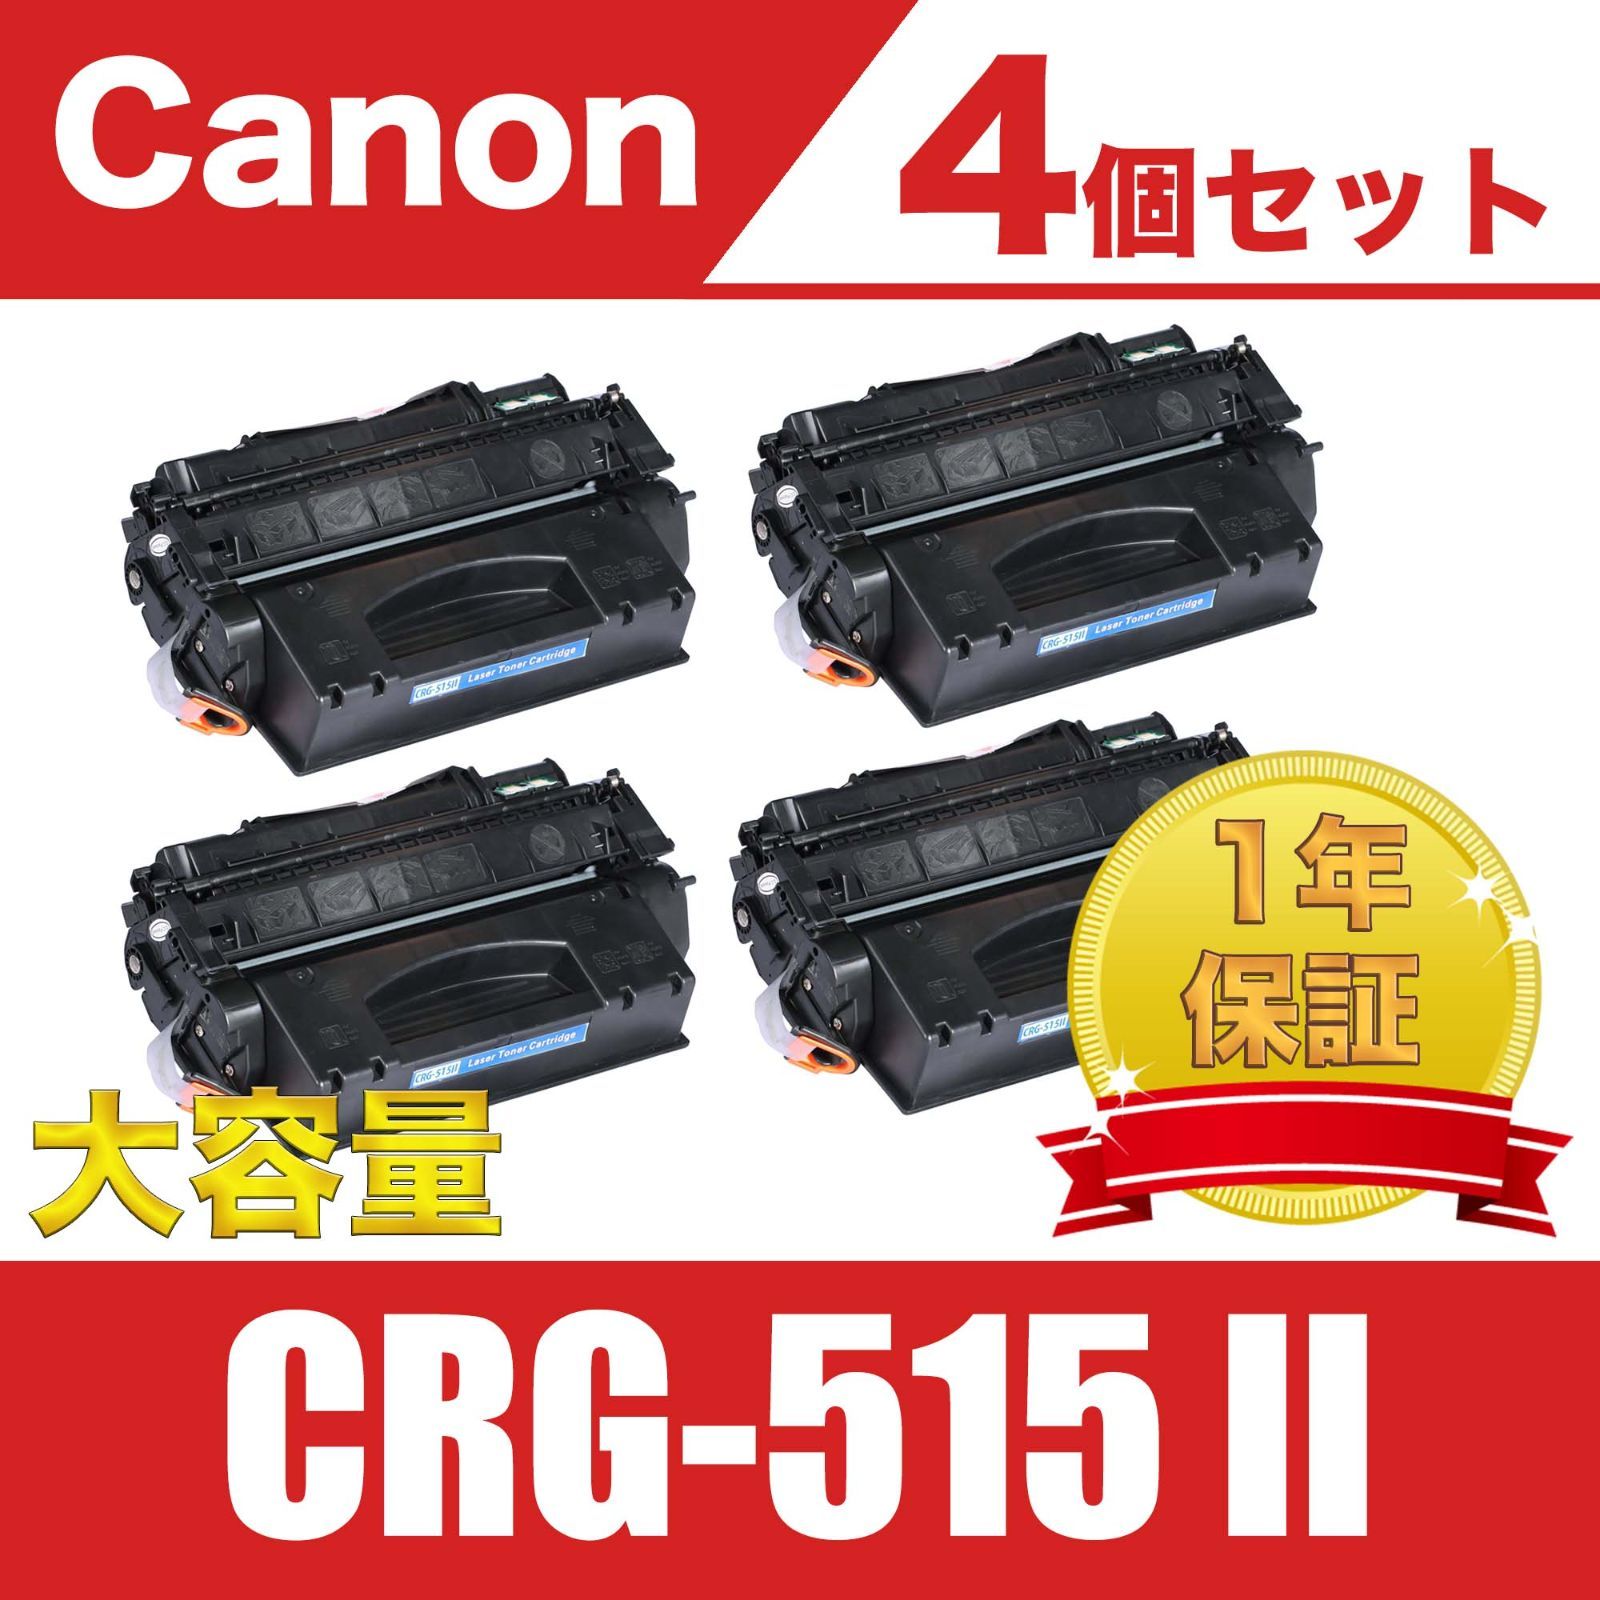 Canon トナーカートリッジ CRG-515Ⅱ